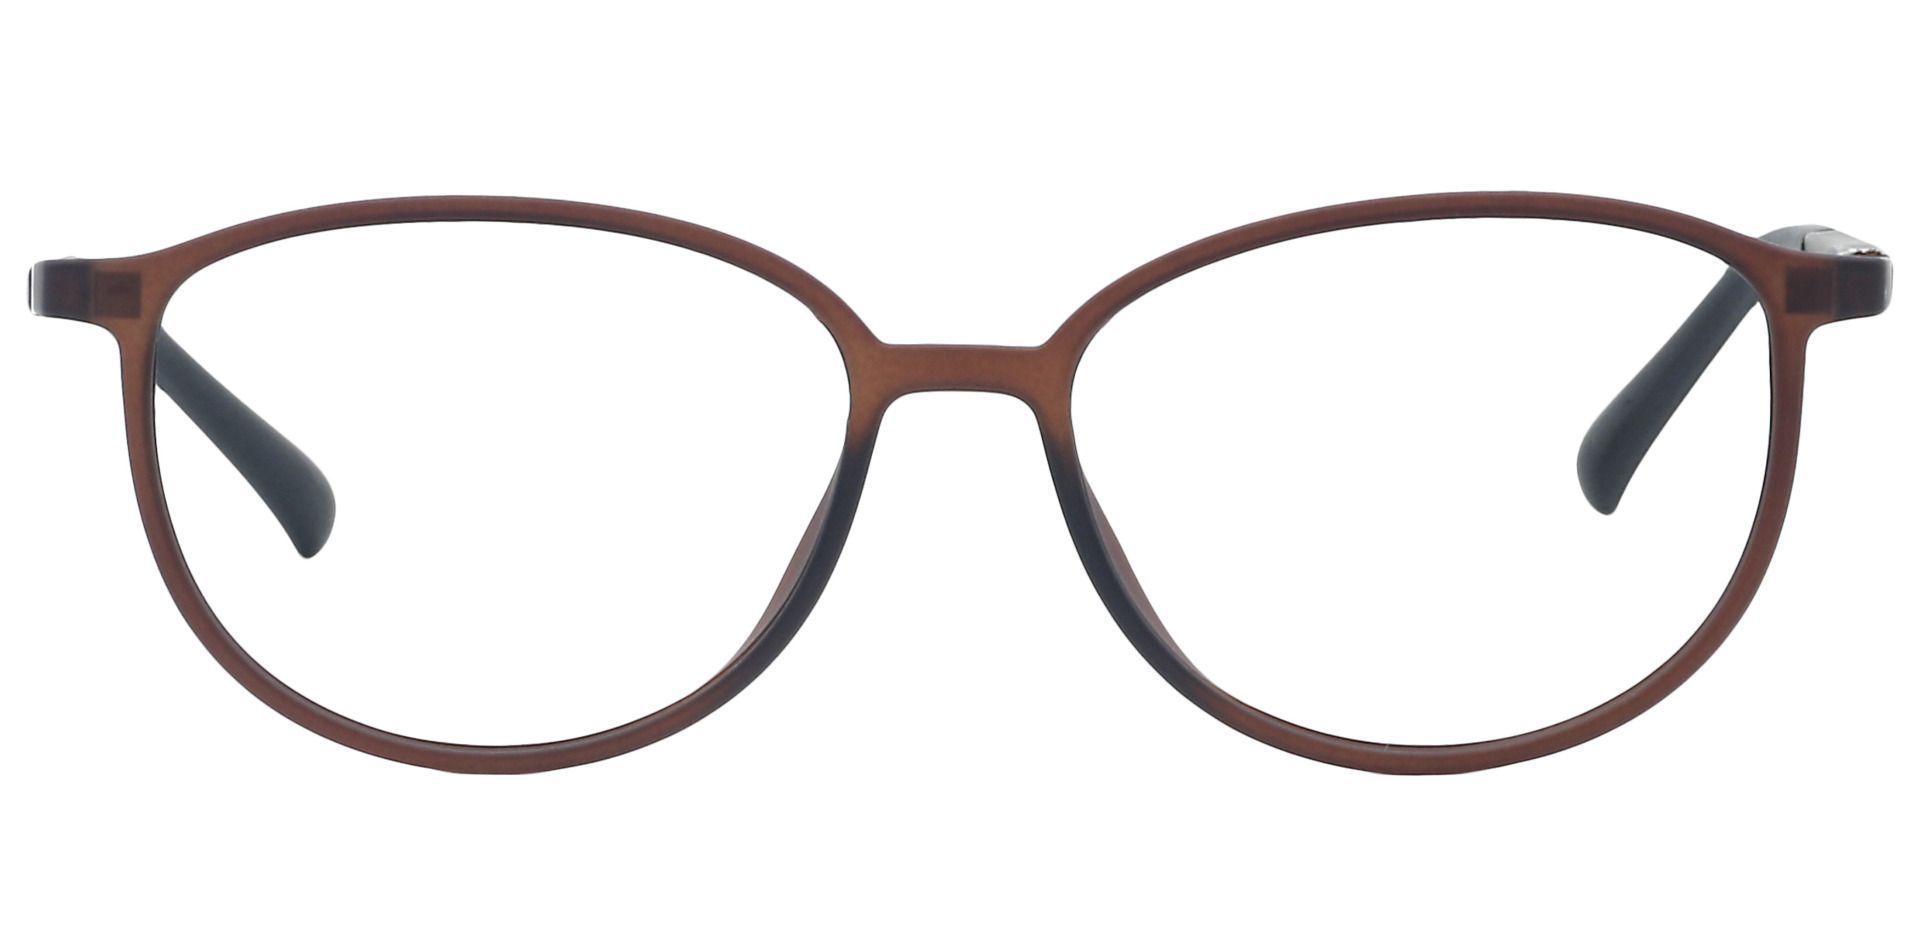 Melbourne Oval Eyeglasses Frame - Brown